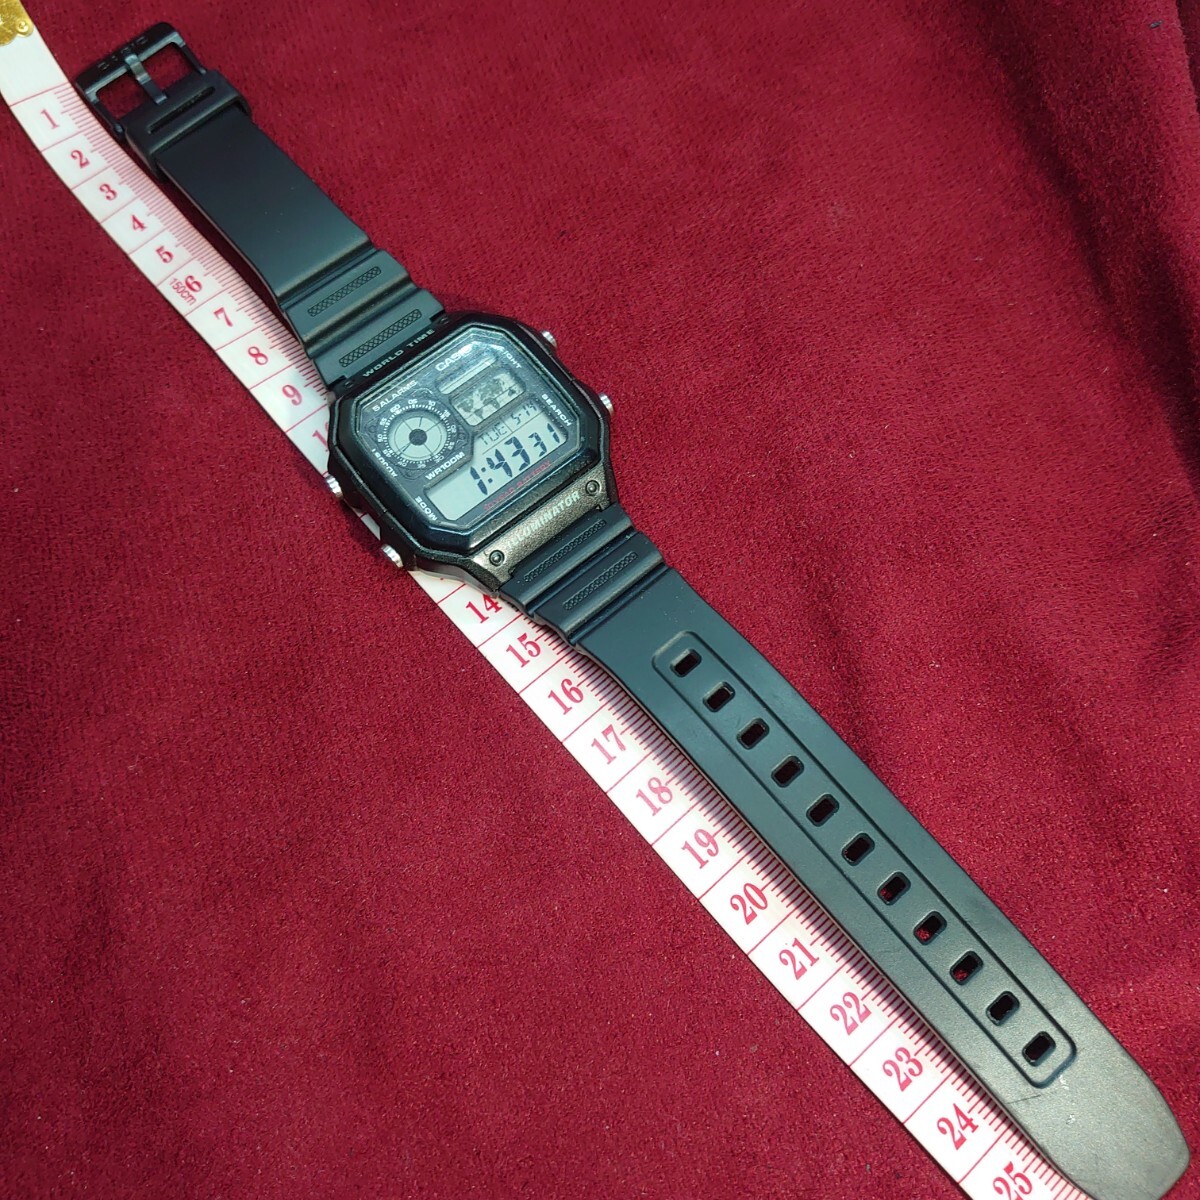 530【動作品】CASIO WORLD TIME ILLUMINATOR AE-1200WH メンズ デジタル 腕時計 カシオ ワールドタイム イルミネーター ブラック _画像6